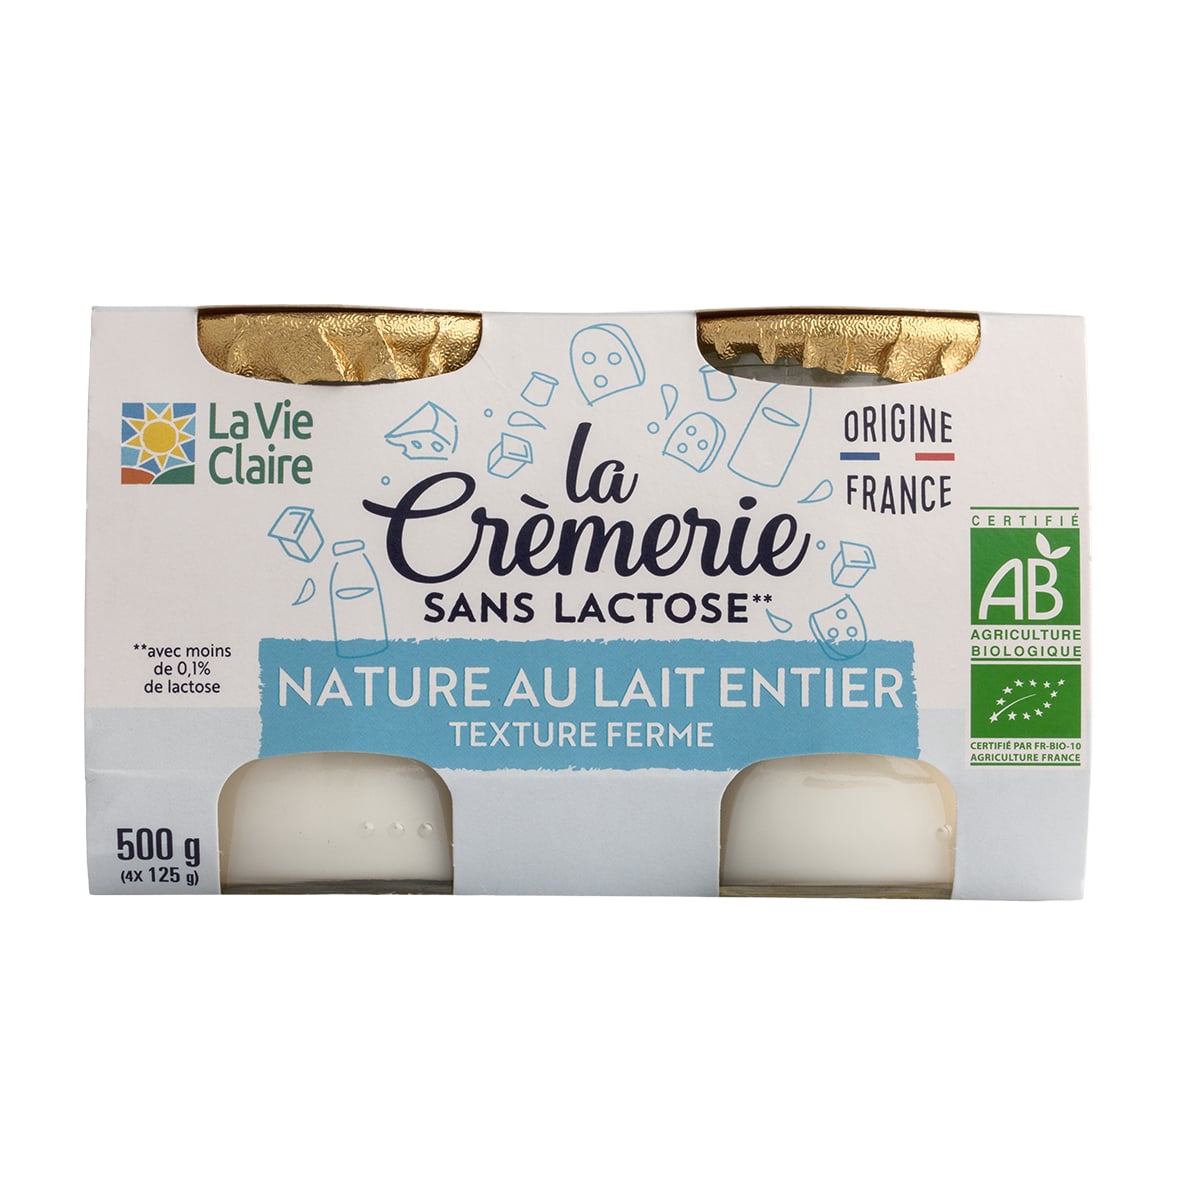 Pour la santé, privilégiez les yaourts nature classiques - Le Parisien